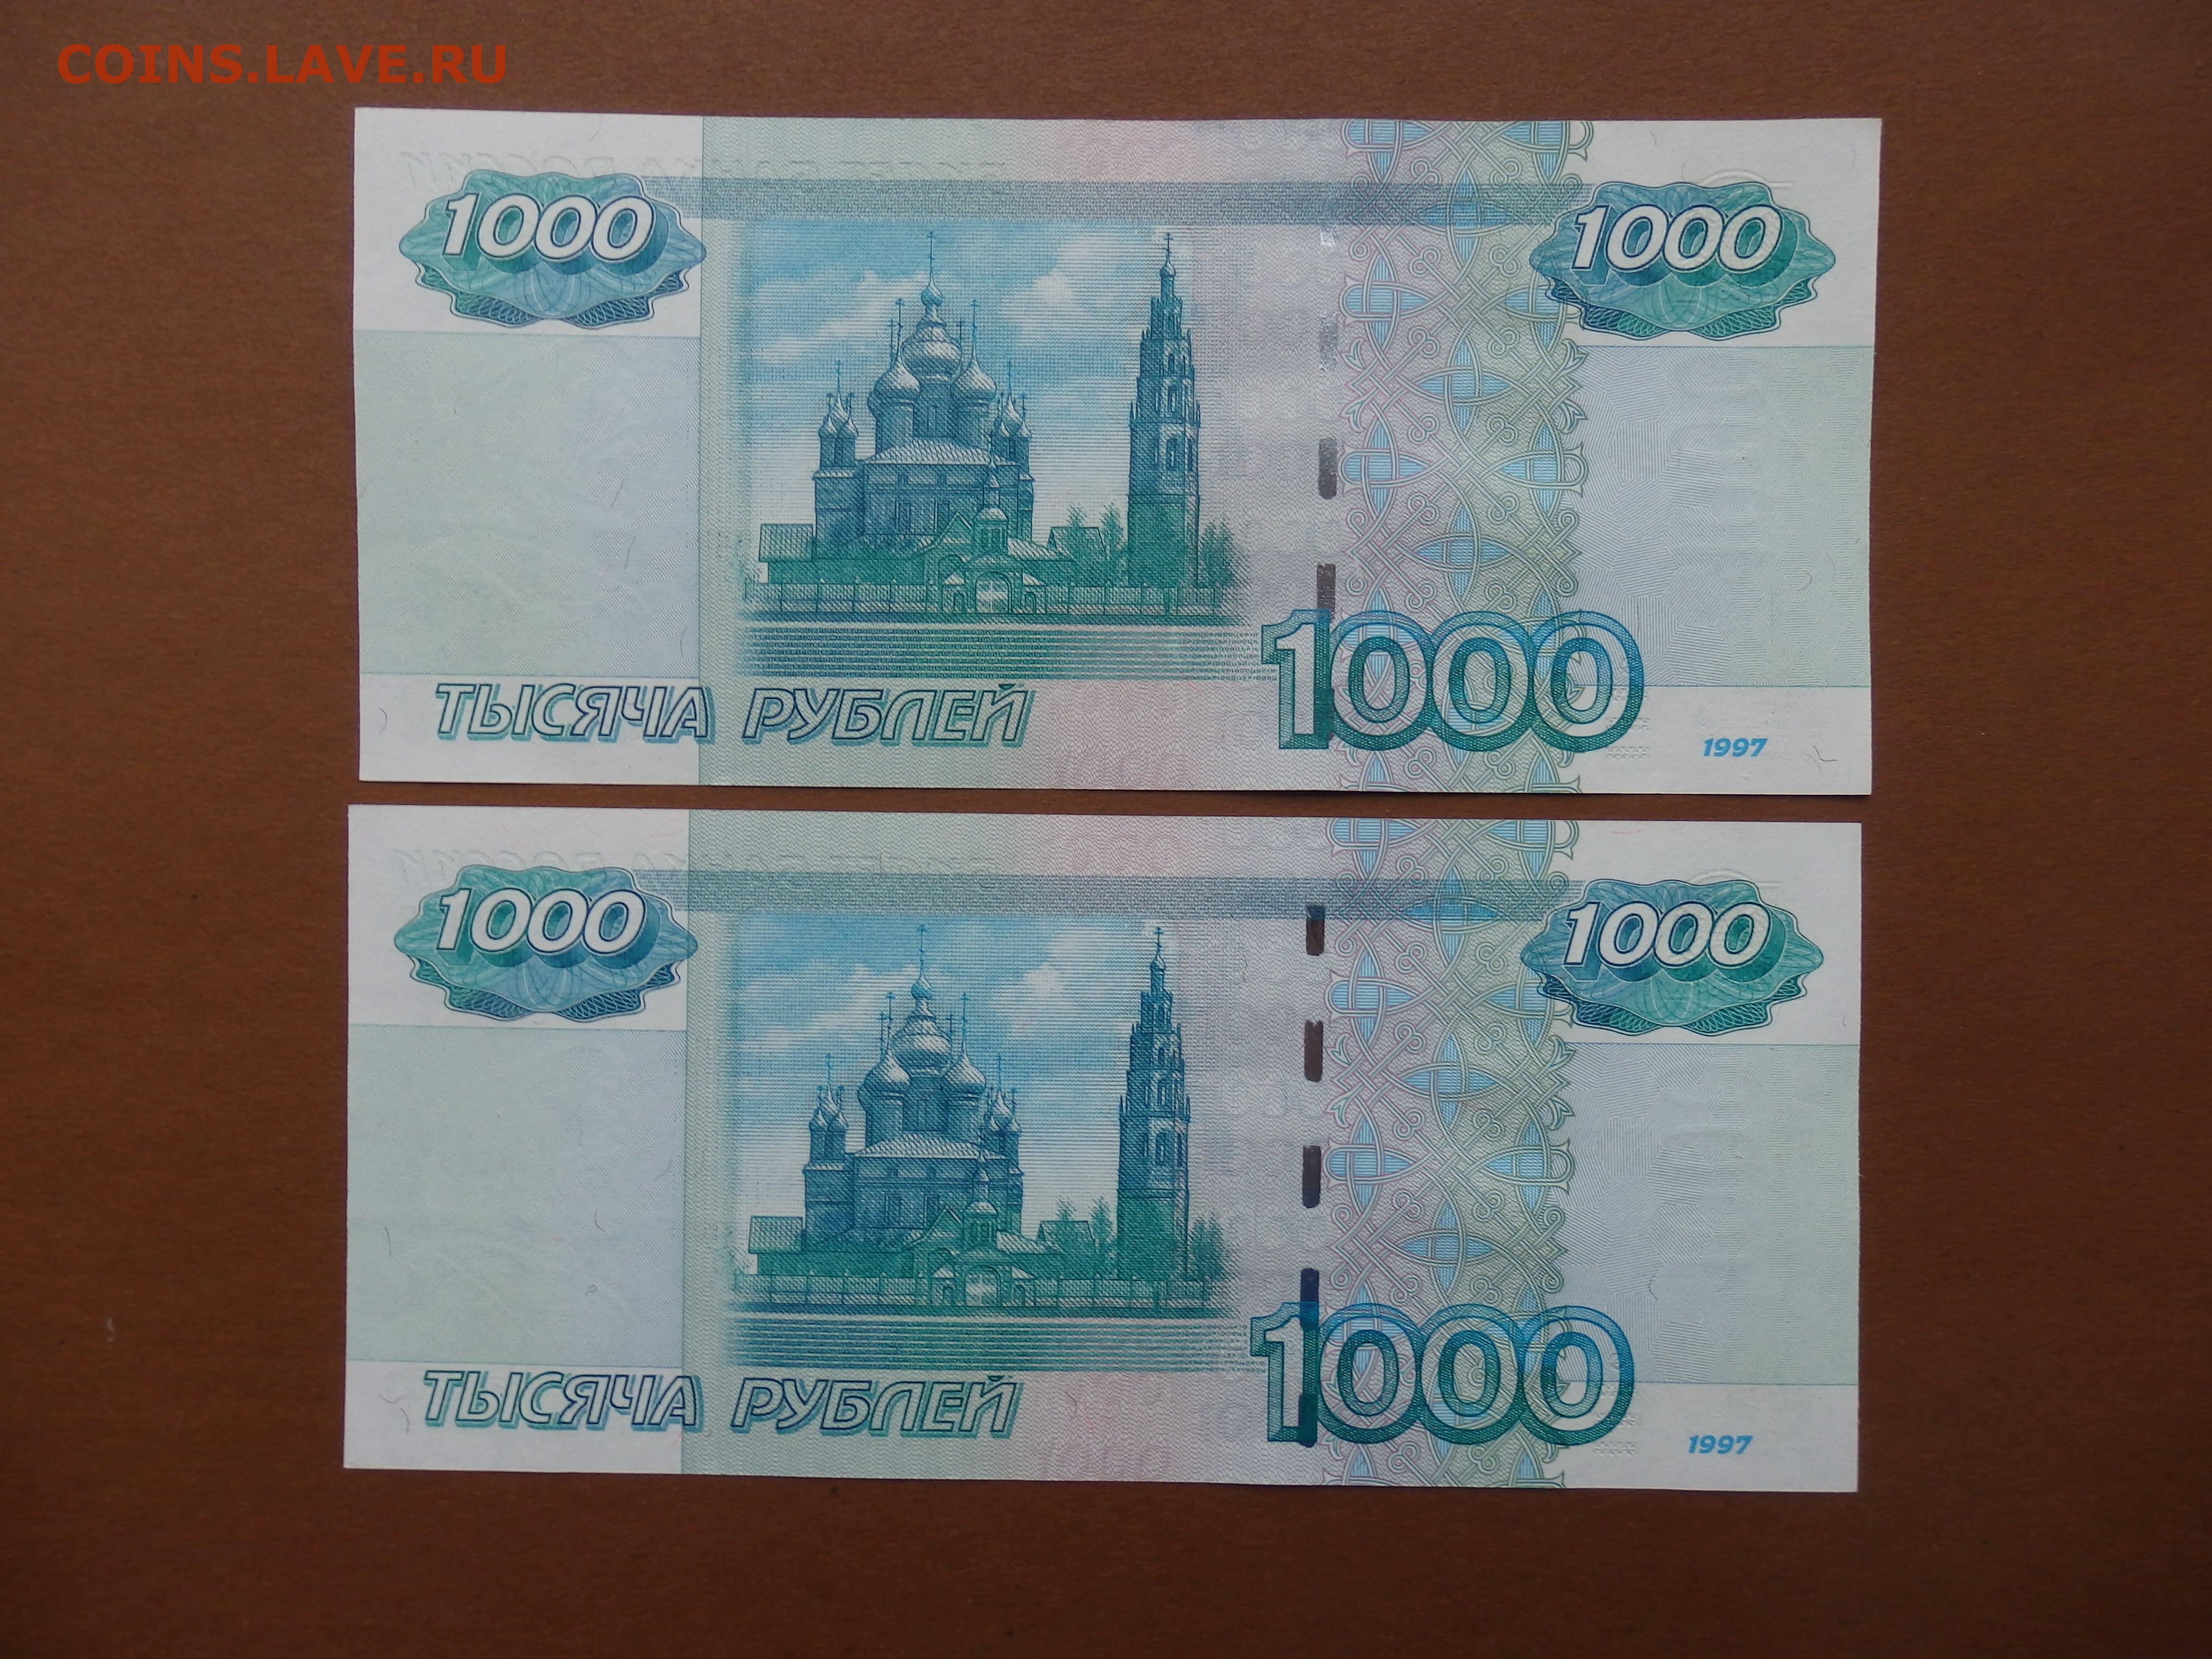 1000 рублей 2004. 1000 Рублей 2004 года модификации. 1000 Руб 2001. Купюра 1000 рублей. Тысяча рублей 2004 года.